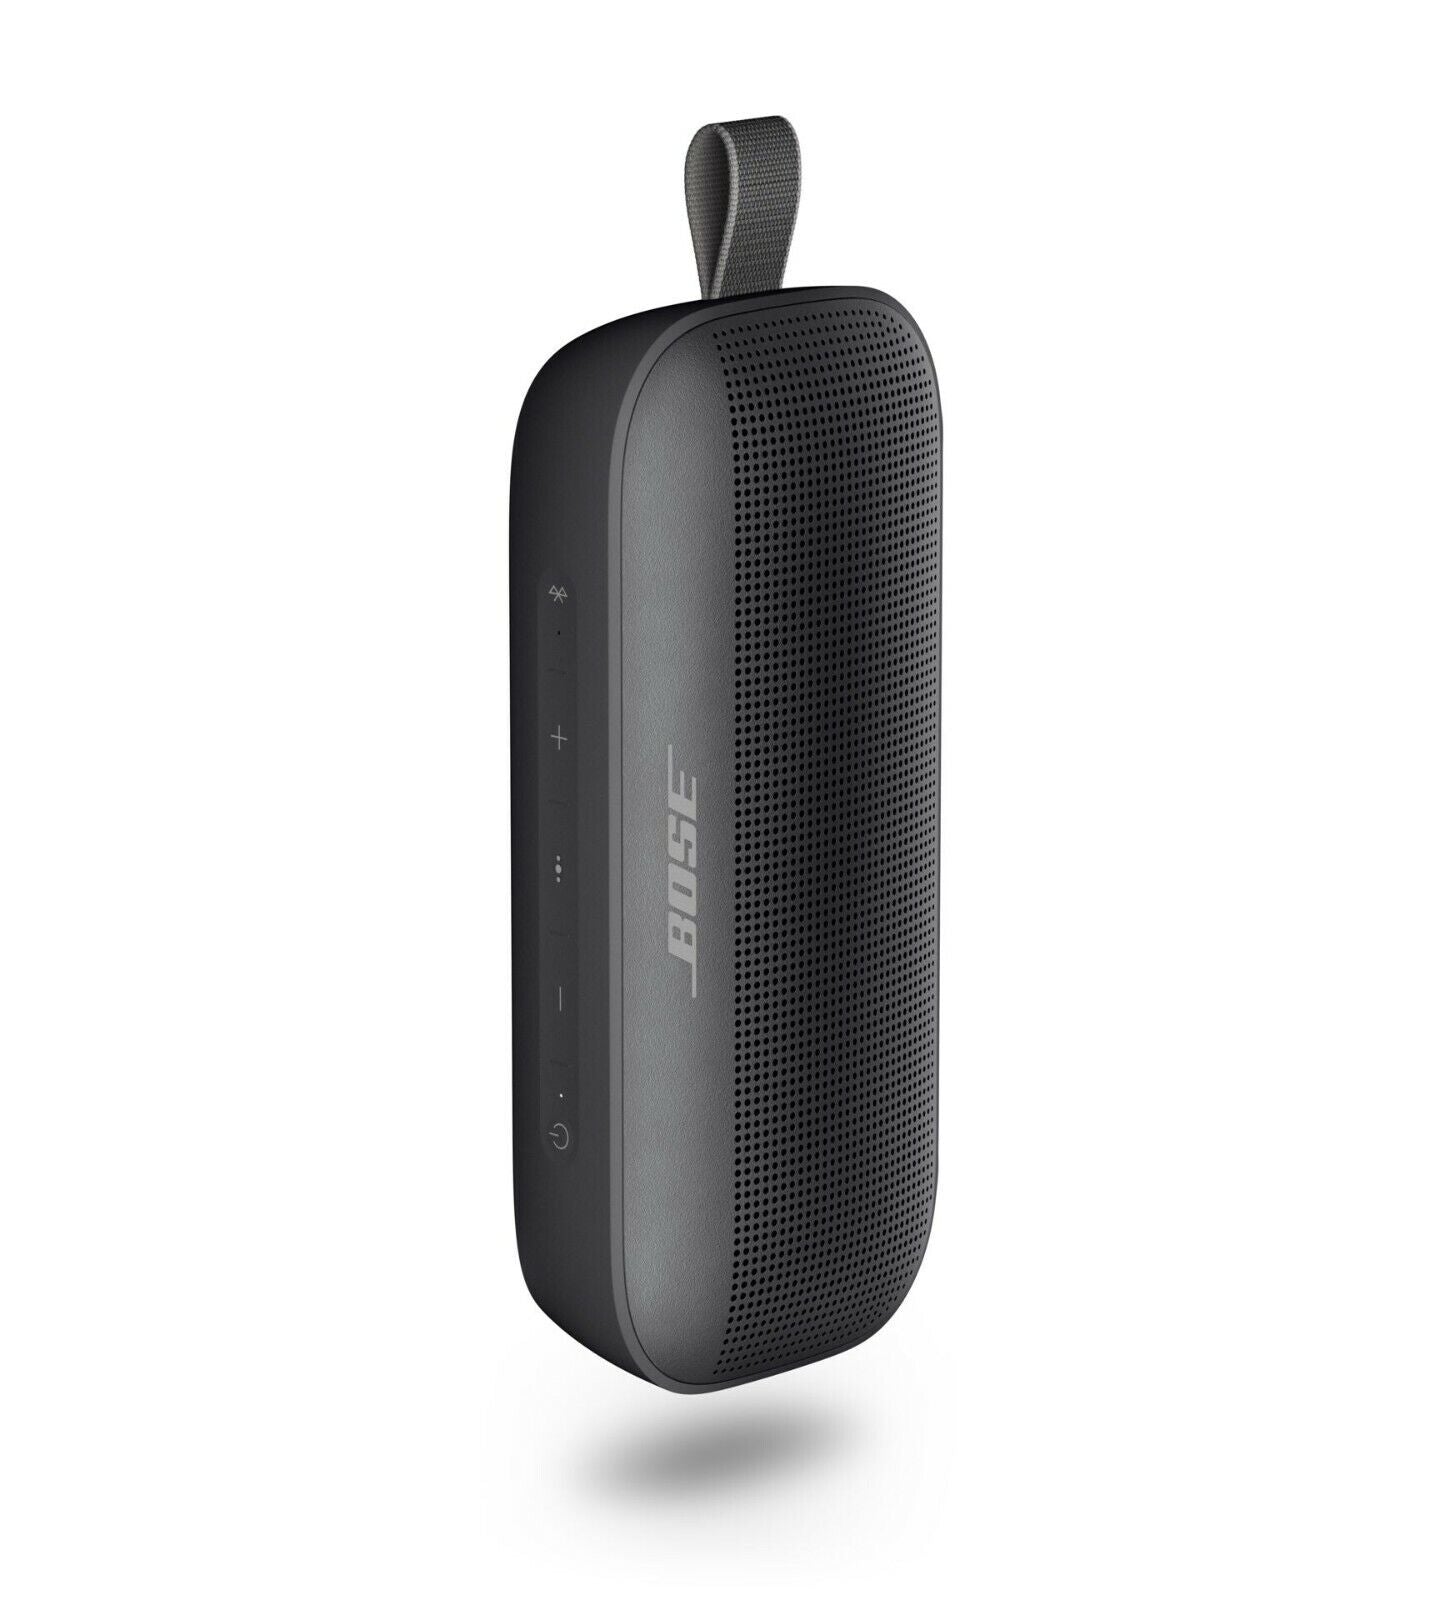 Altavoz impermeable Bluetooth para exteriores SoundLink Flex de Bose, completamente nuevo y sellado 